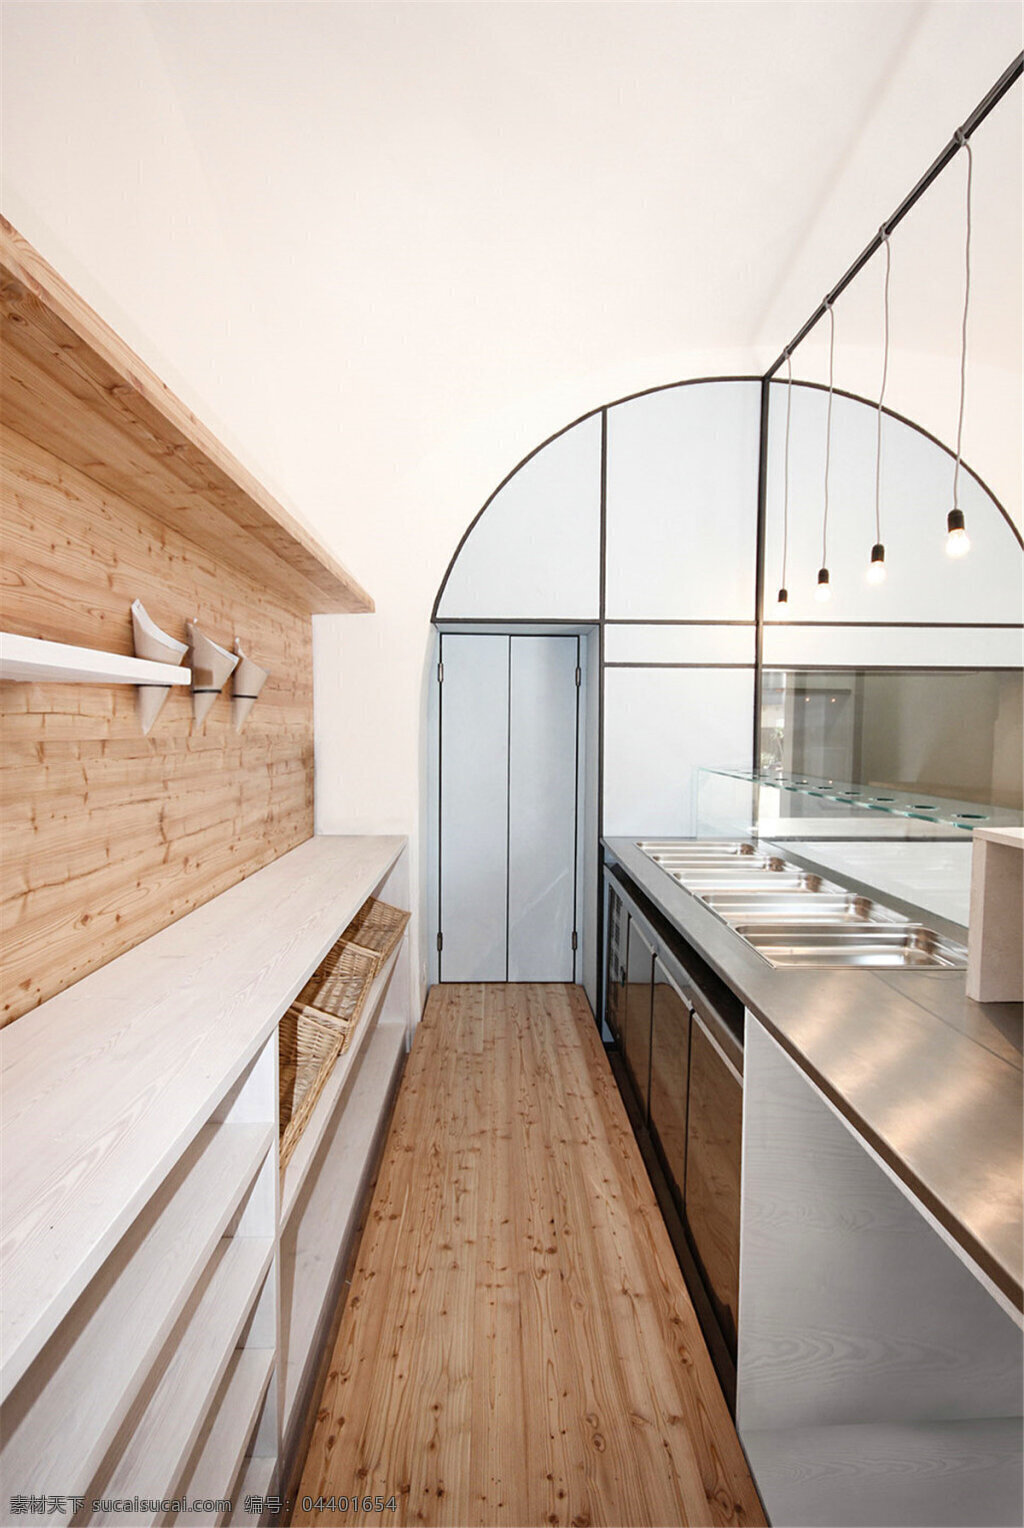 烘焙 室 玻璃门 装修 效果图 烘焙室 木地板 木质墙壁 白色吊顶 吊灯 餐台